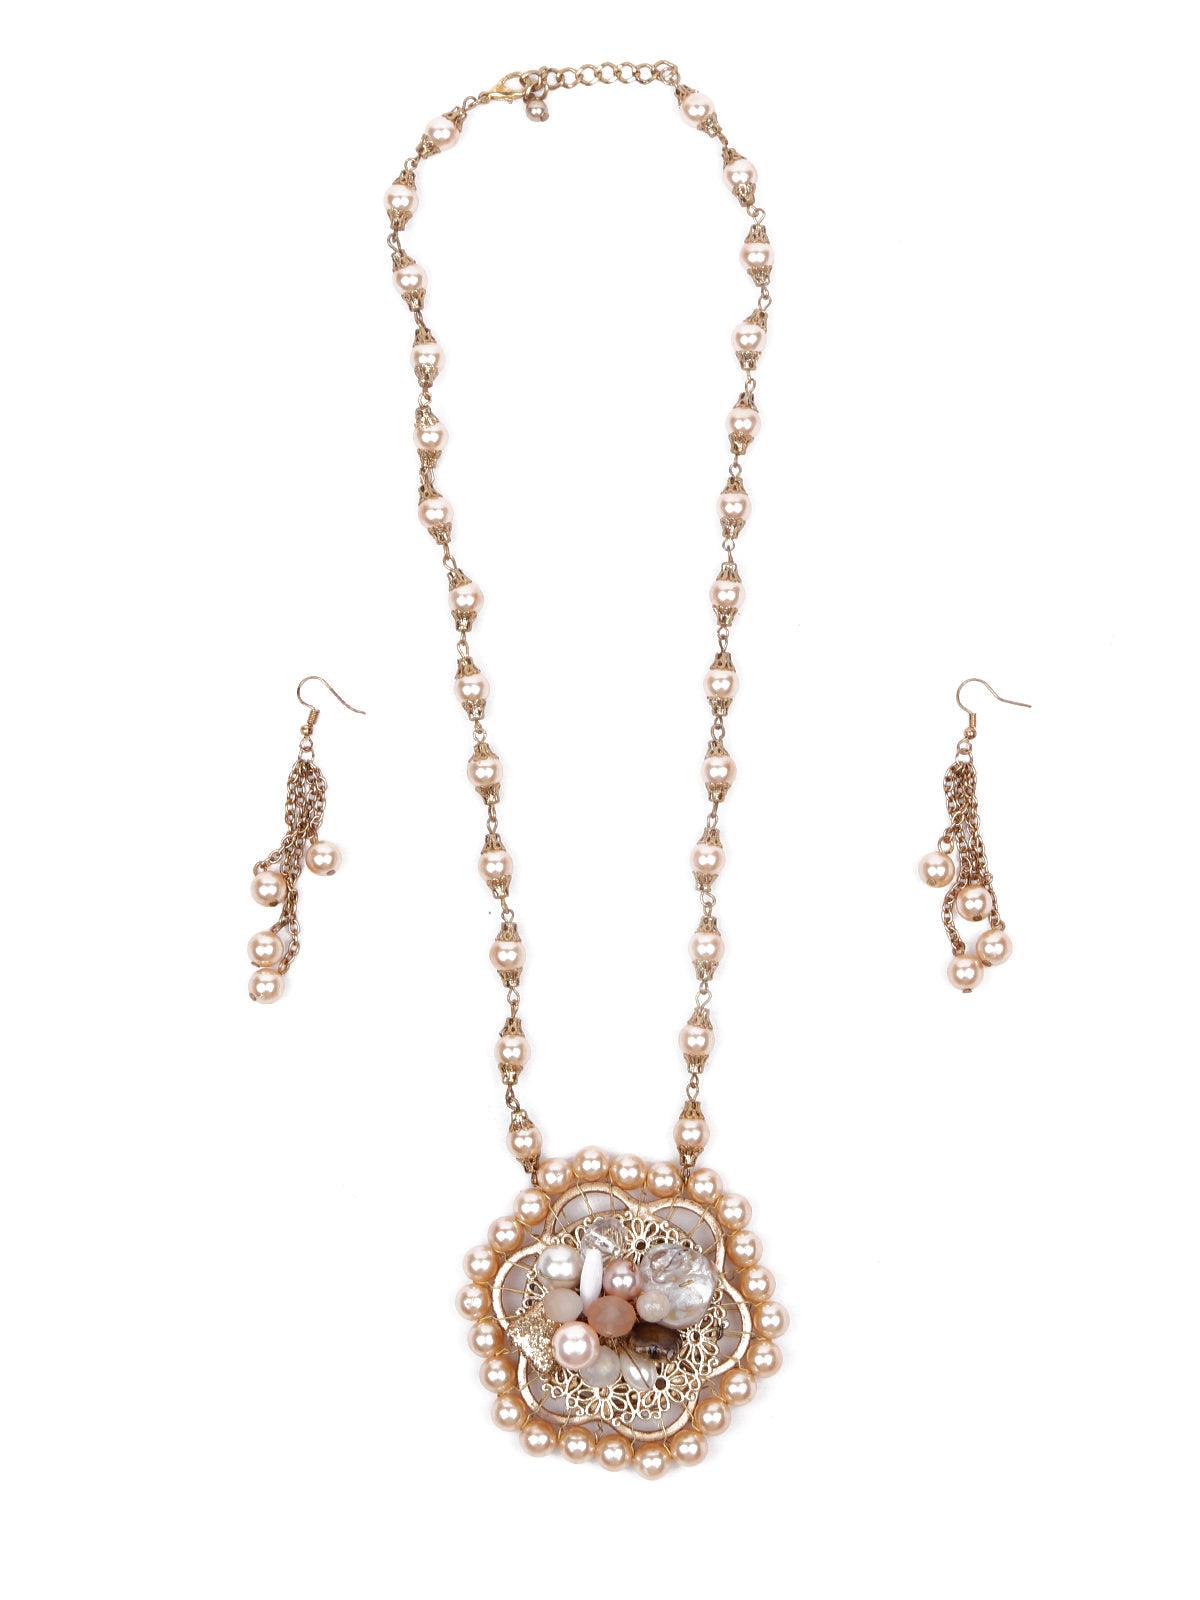 Gold beaded pendant necklace set - Odette